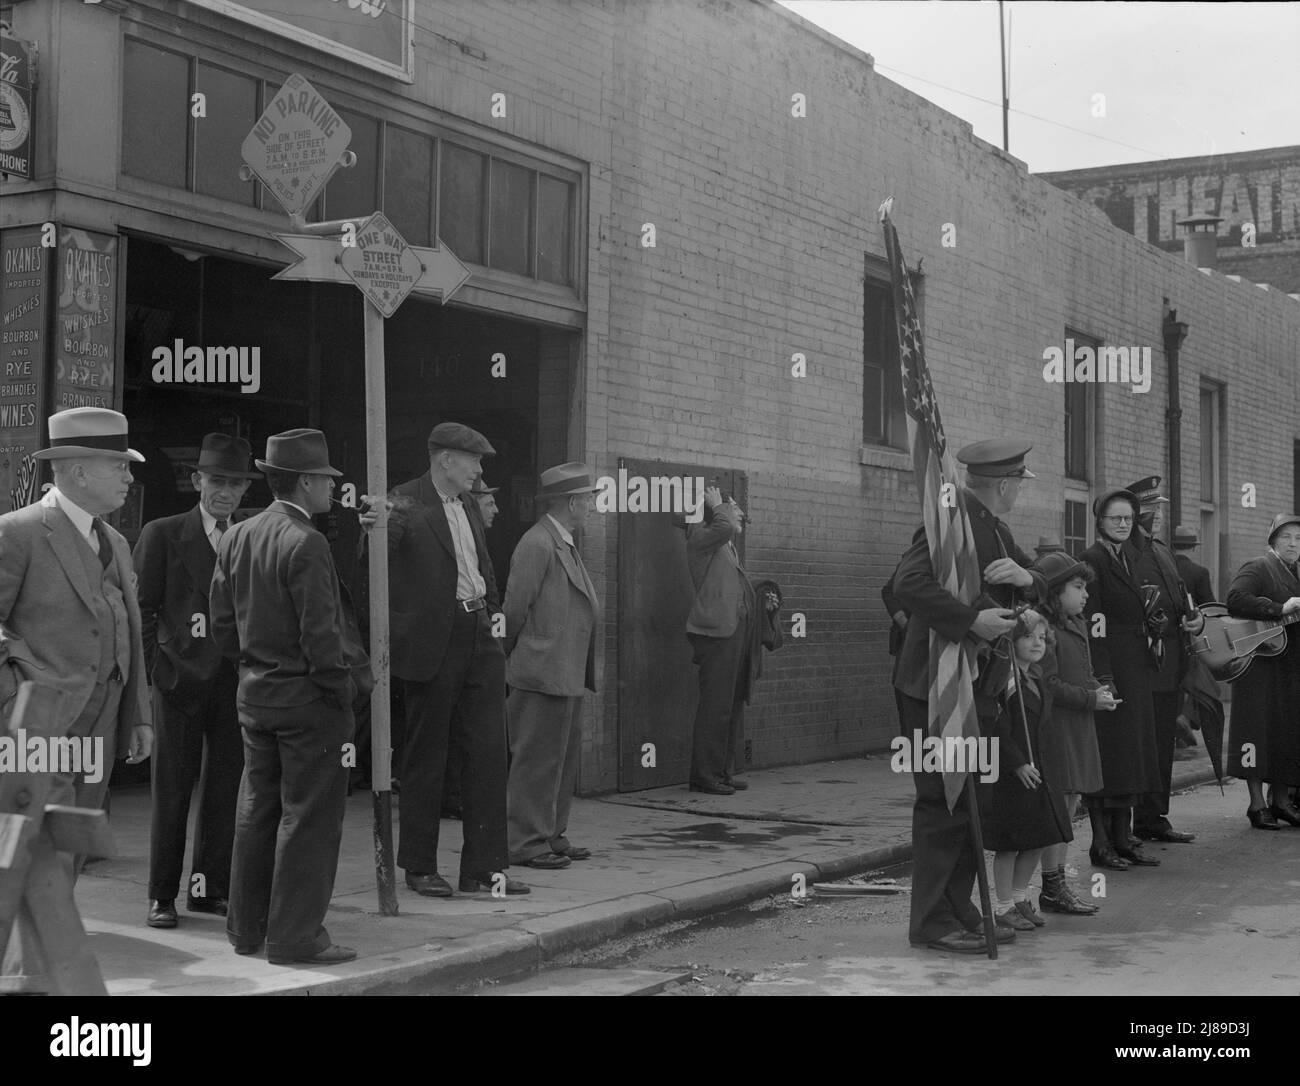 Salvation Army, San Francisco, Kalifornien. Männer kommen aus der benachbarten Bar, um zuzusehen, und kehren zur Bar zurück. (San Francisco soll pro Kopf mehr Whiskey trinken als jede andere Stadt in den Vereinigten Staaten). [Schilder: „No Parking - One Way Street“]. Stockfoto